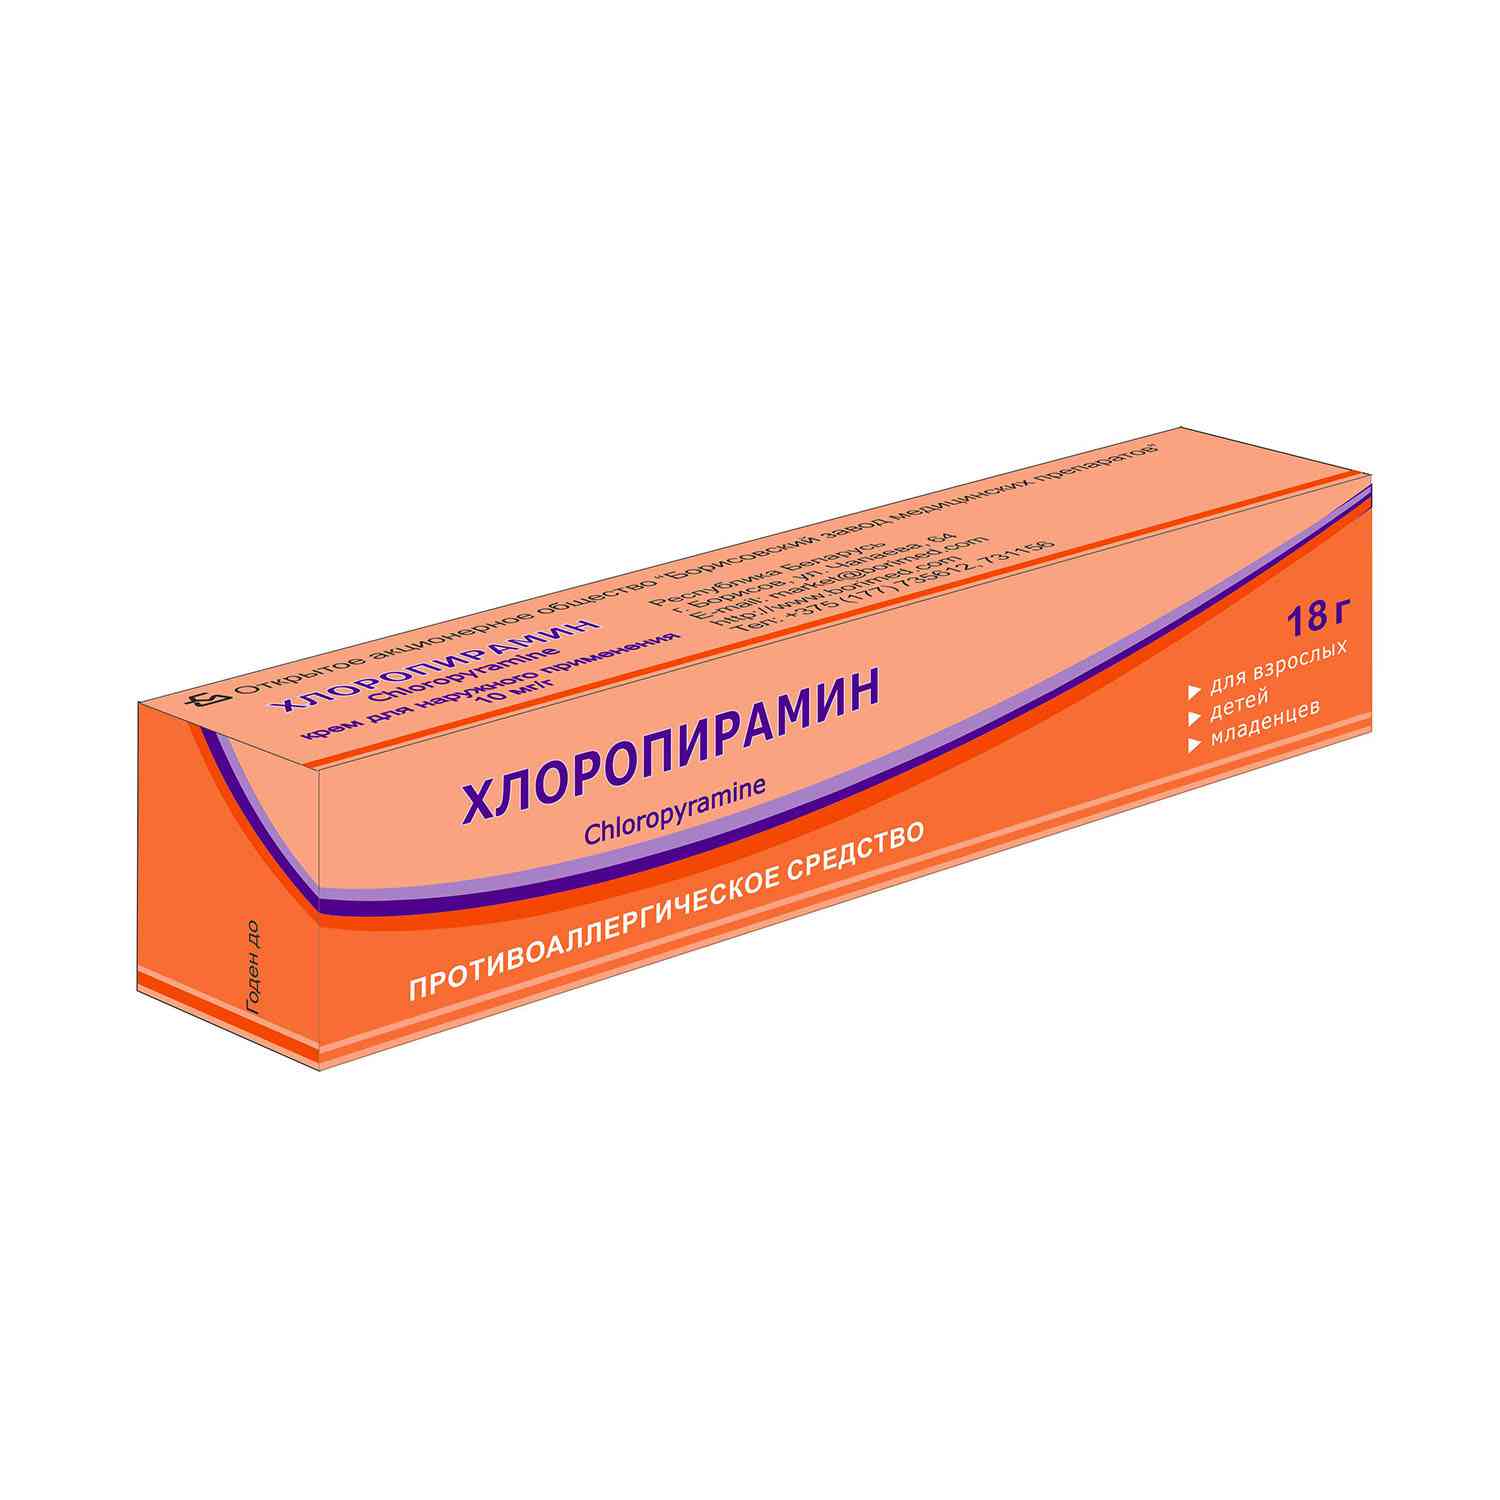 5019 ГАСТРОКІНД - Comb drug